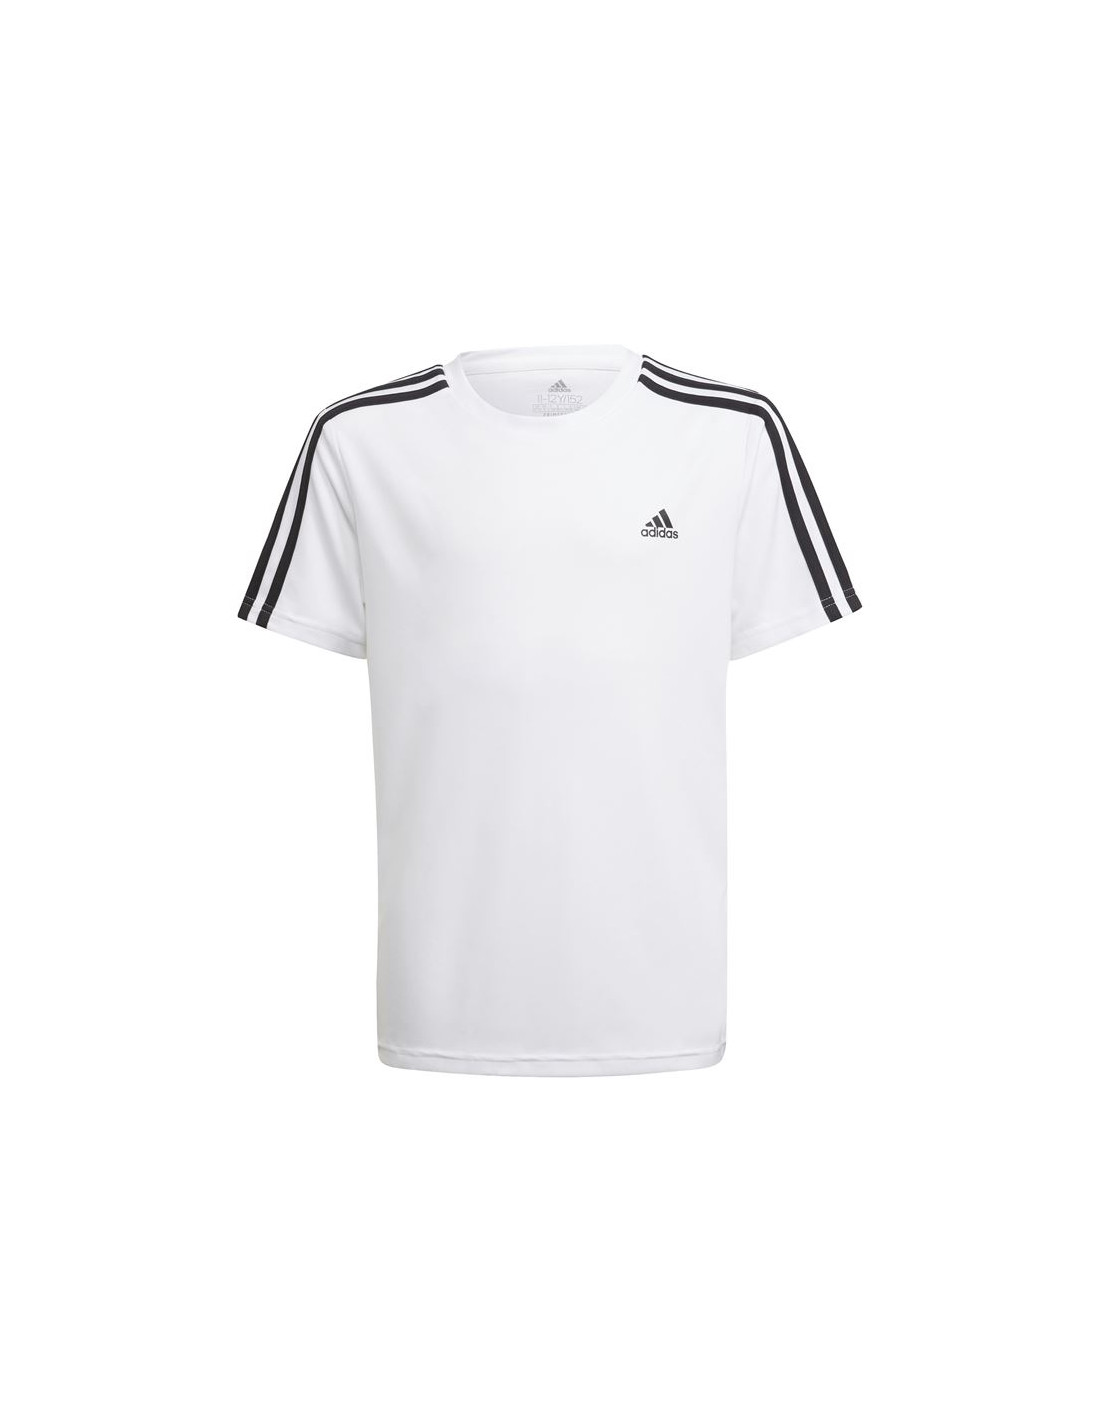 Camiseta adidas designed 2 move 3 bandas boys white